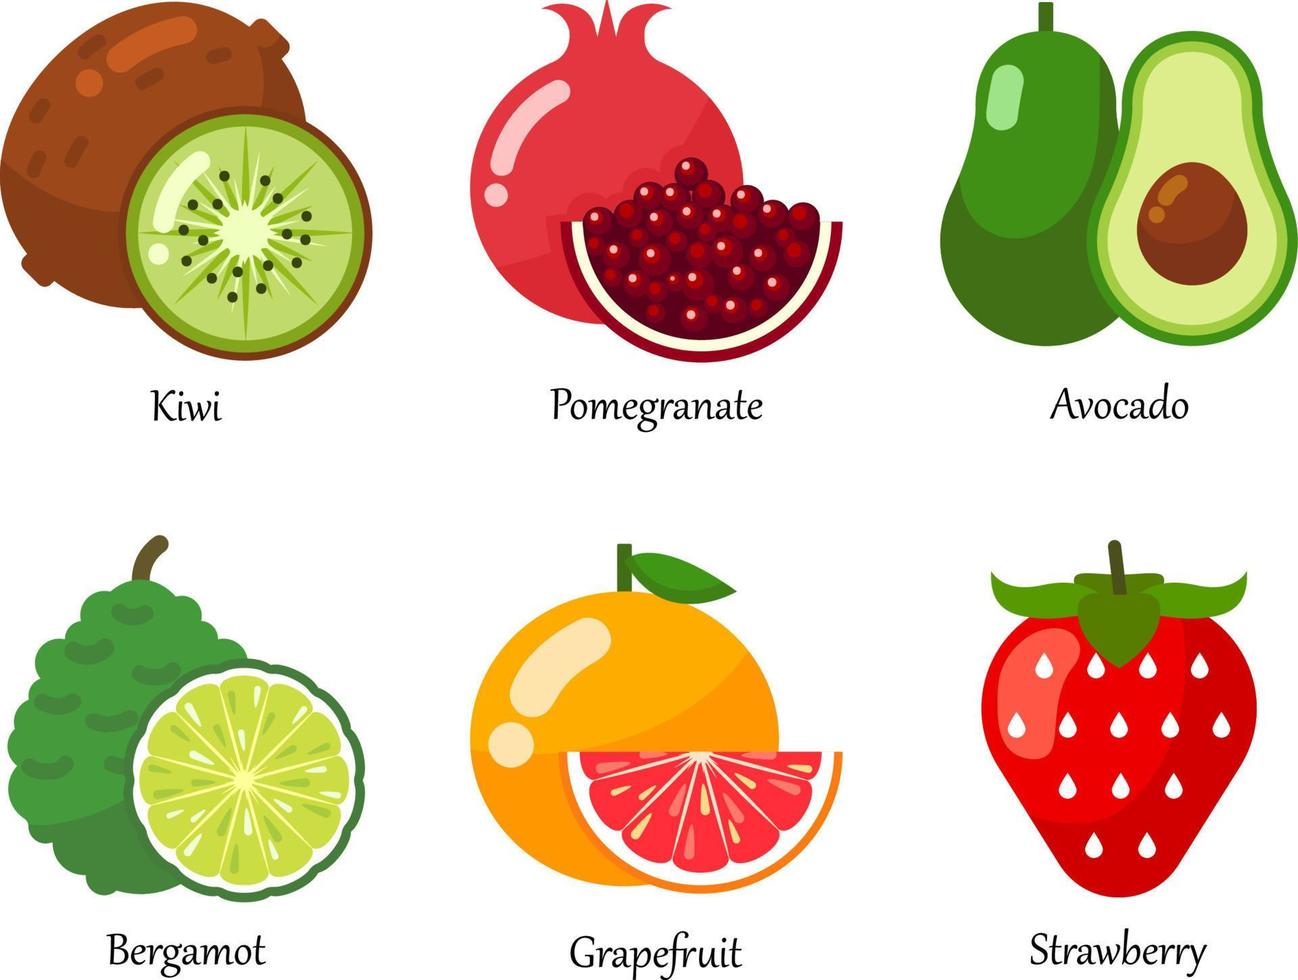 tutte le icone vettoriali di frutta impostate. un insieme di frutta fresca sana isolata.